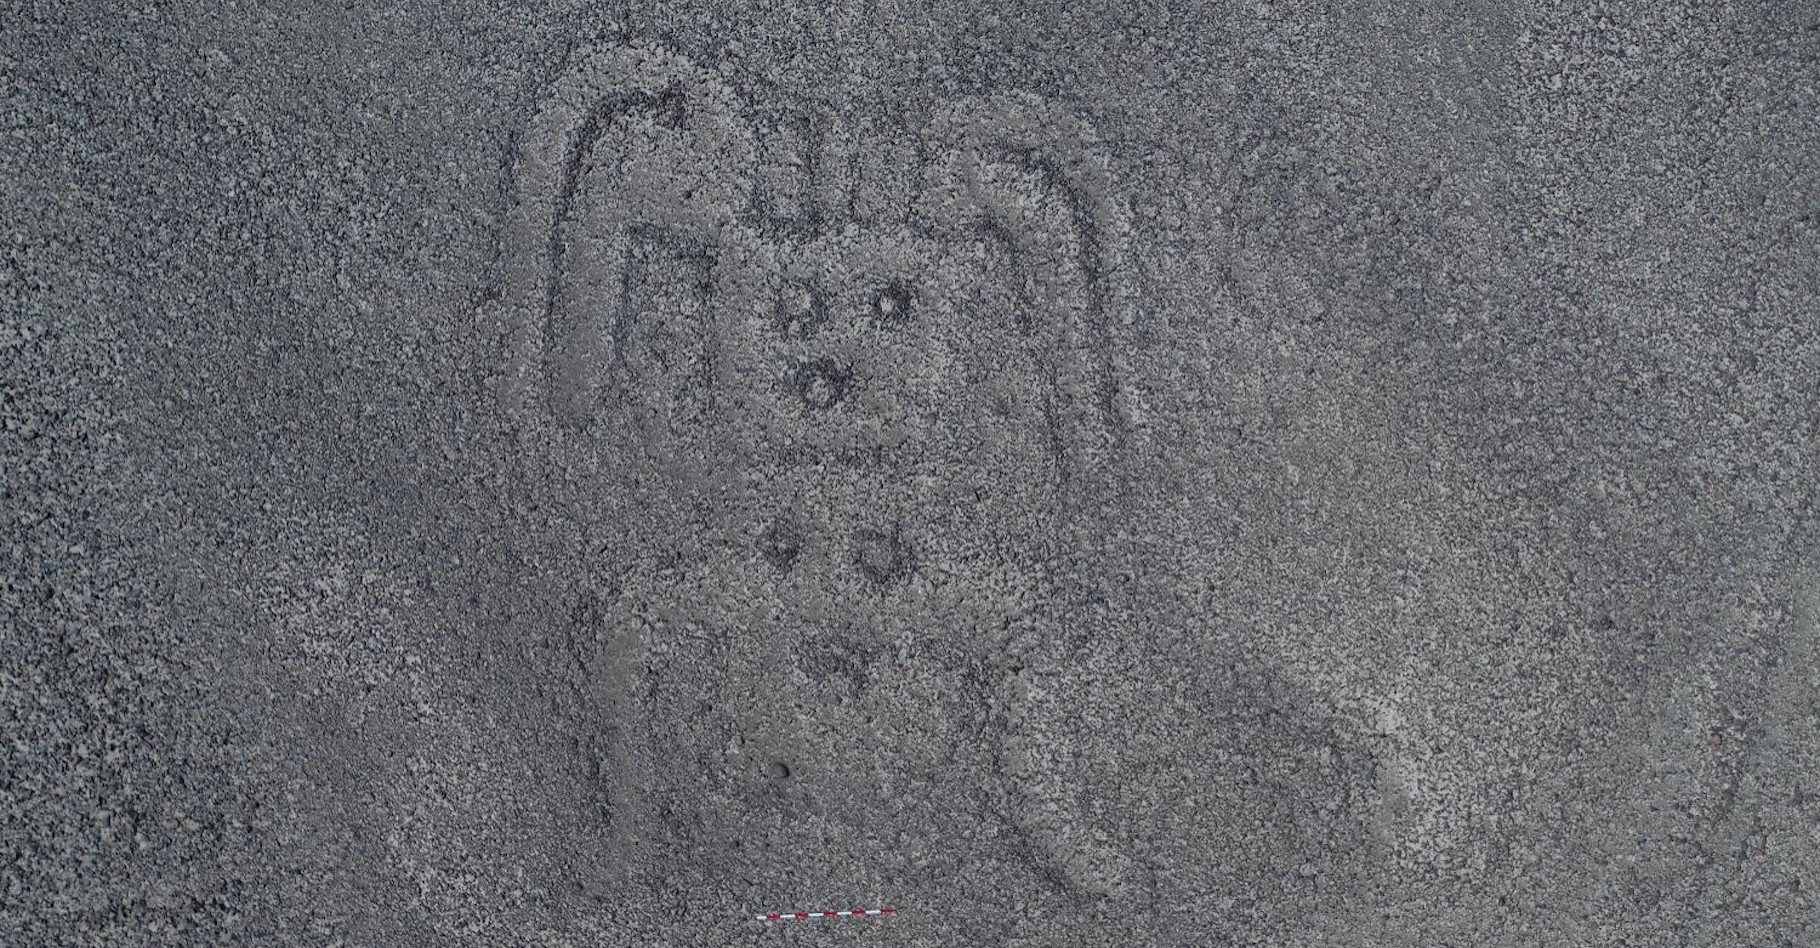 Des archéologues de l’université de Yamagata (Japon) ont mis au jour 143 nouvelles lignes de Nazca. Parmi les géoglyphes relativement petits et dits de type B, cette forme humanoïde. © Université de Yamagata